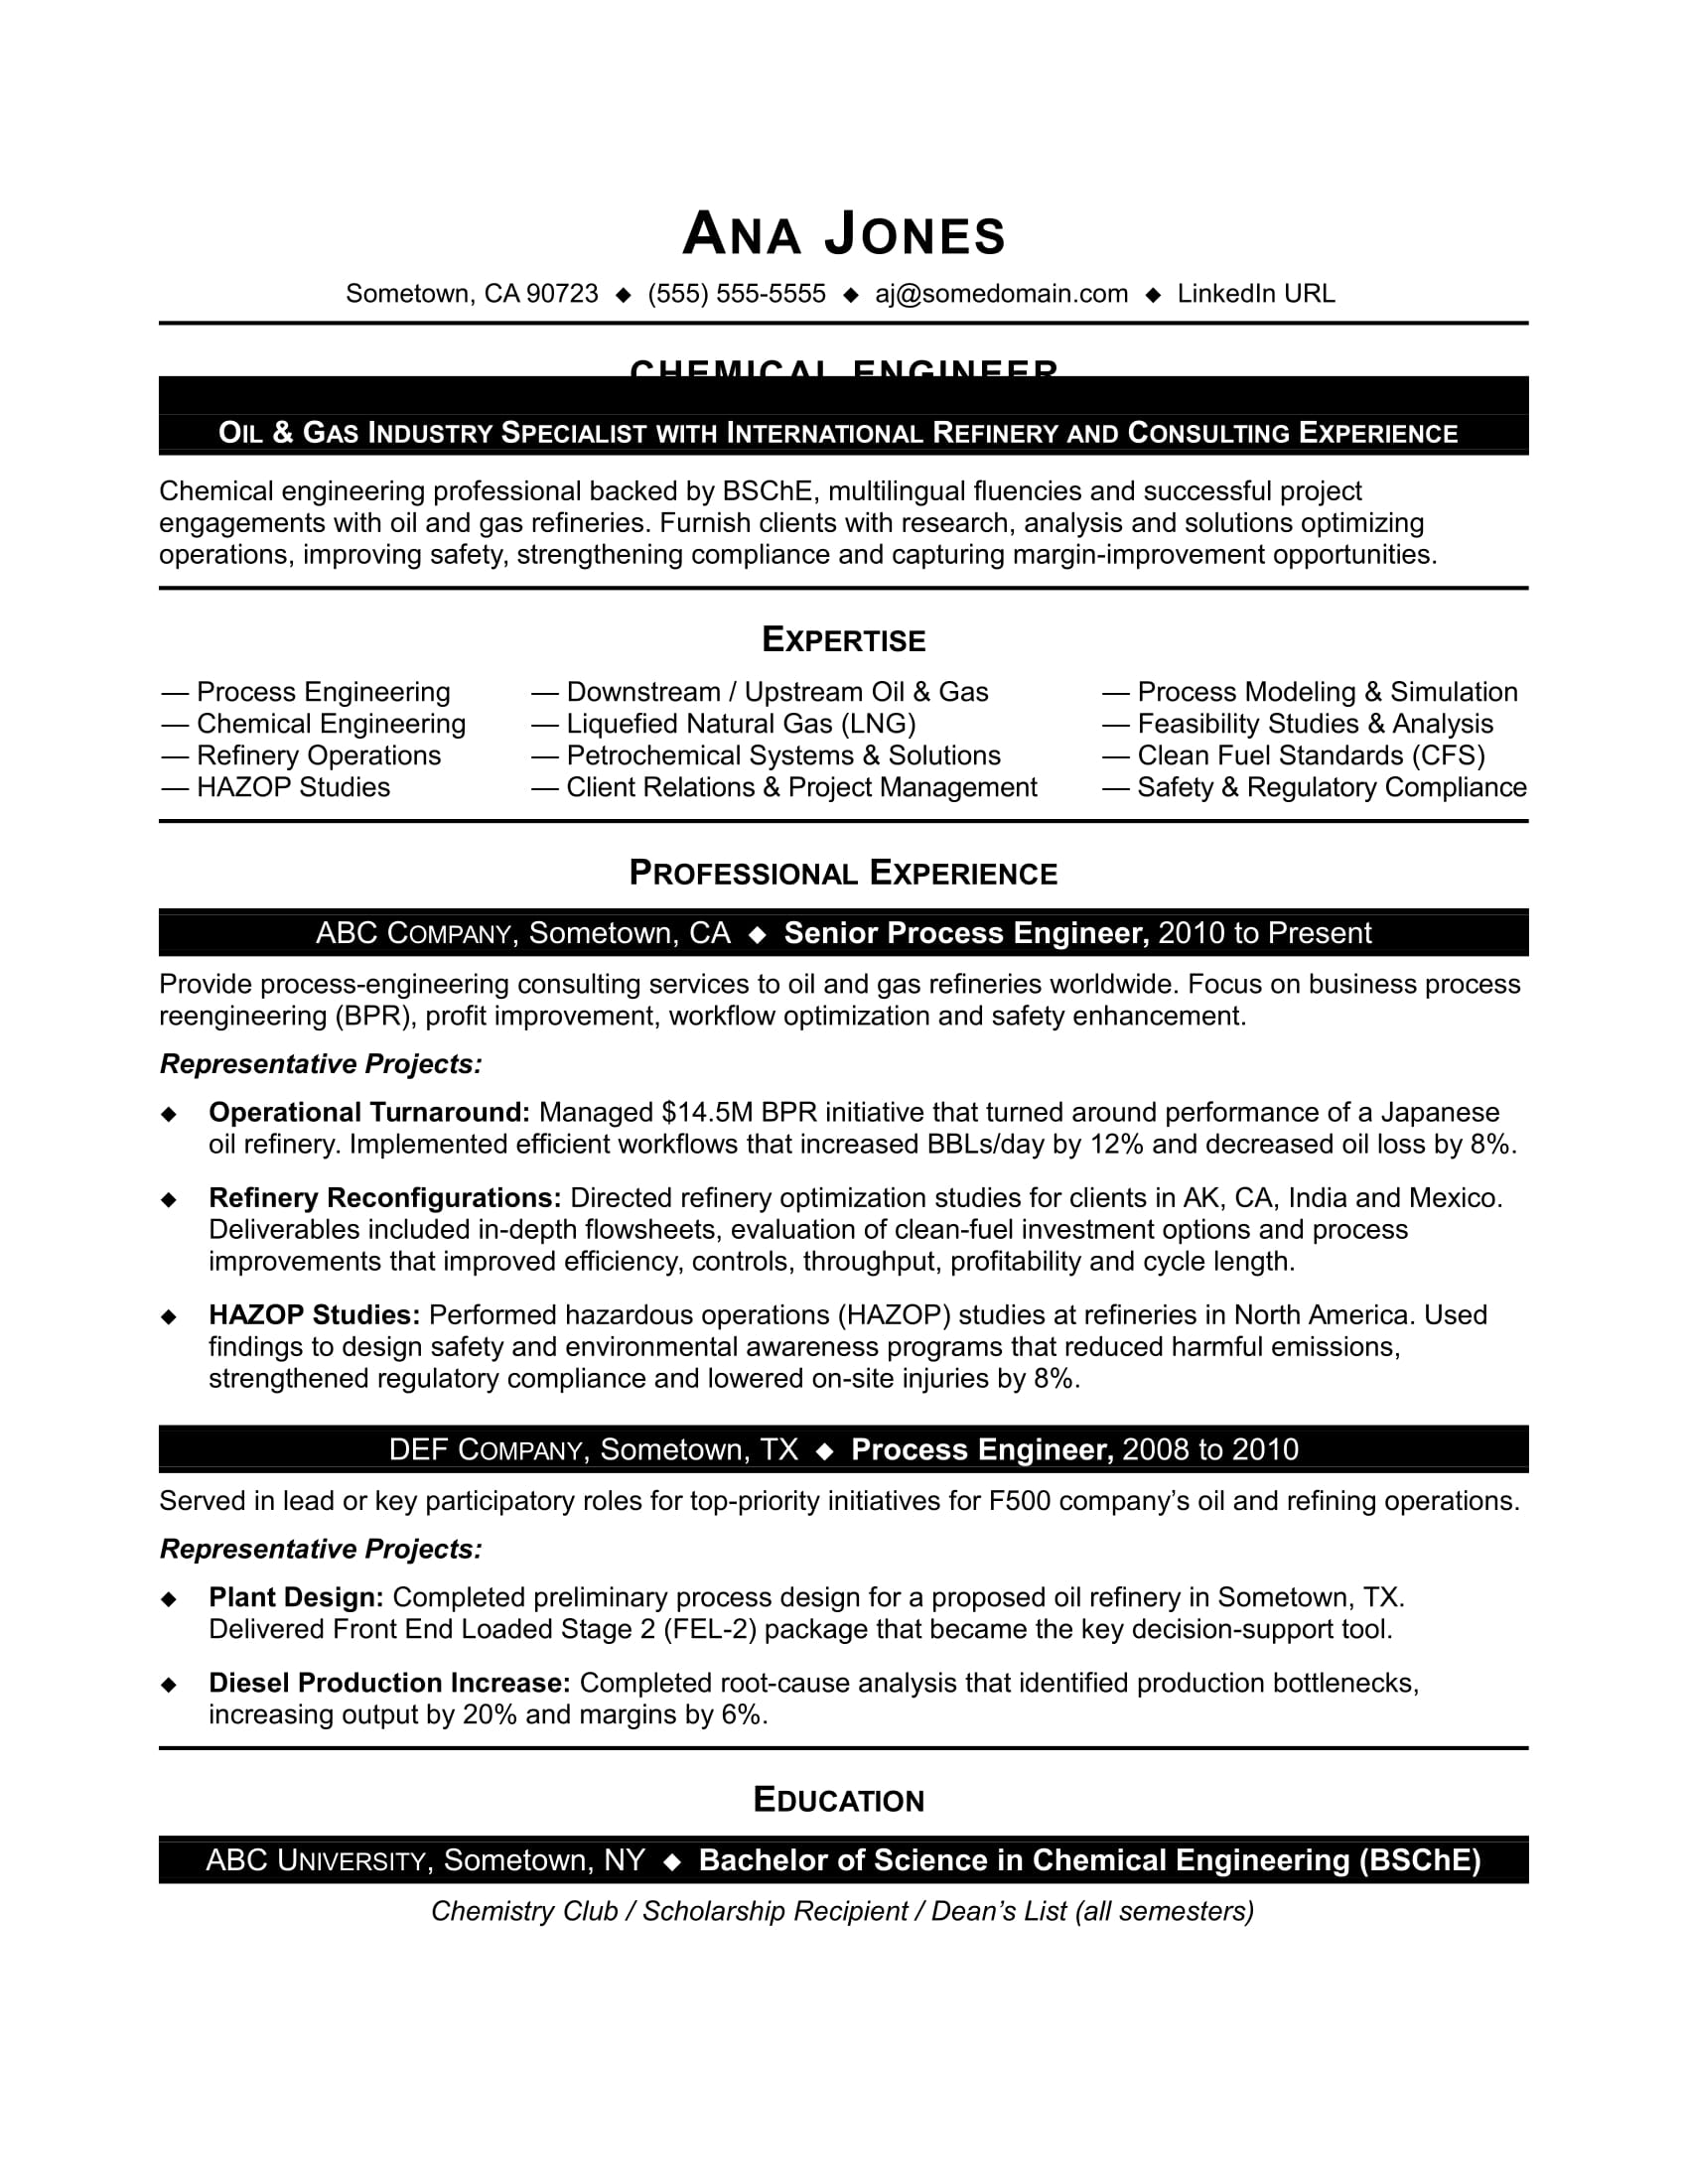 Chemical engineering phd resume